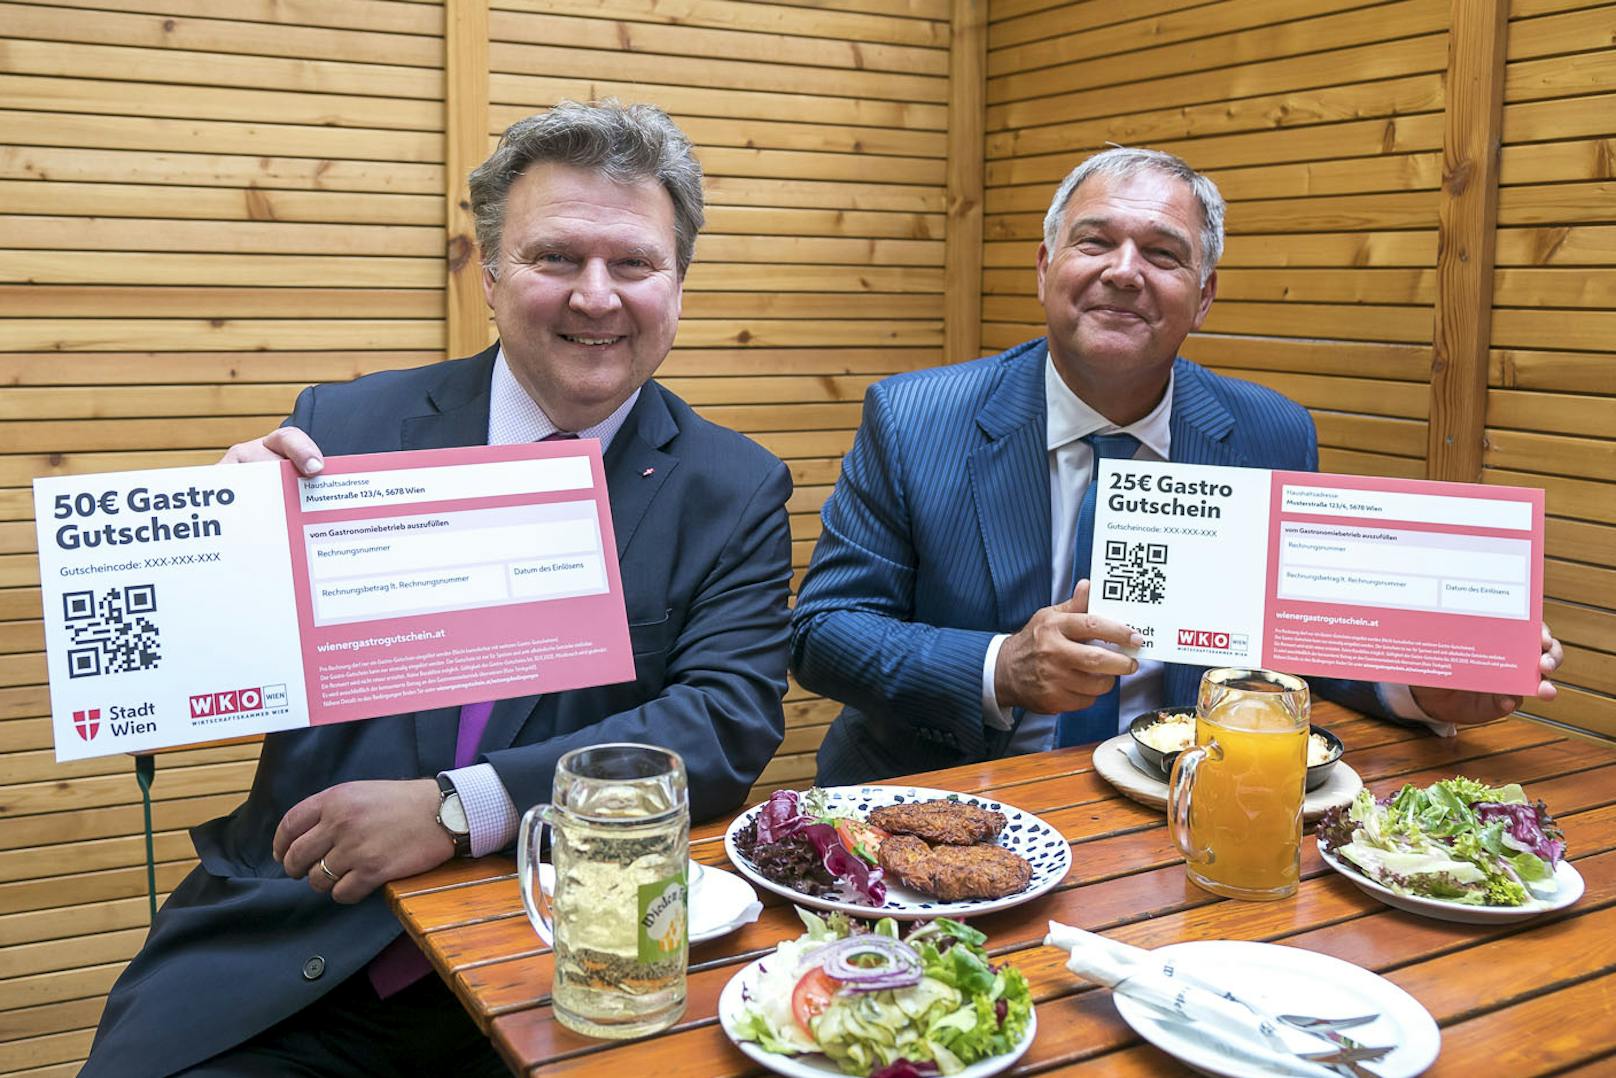 v.li.: Wiens Bürgermeister Michael Ludwig (SPÖ) und Wiens Wirtschaftkammer-Präsident Walter Ruck bei der Präsentation der Gastro-Gutscheine.